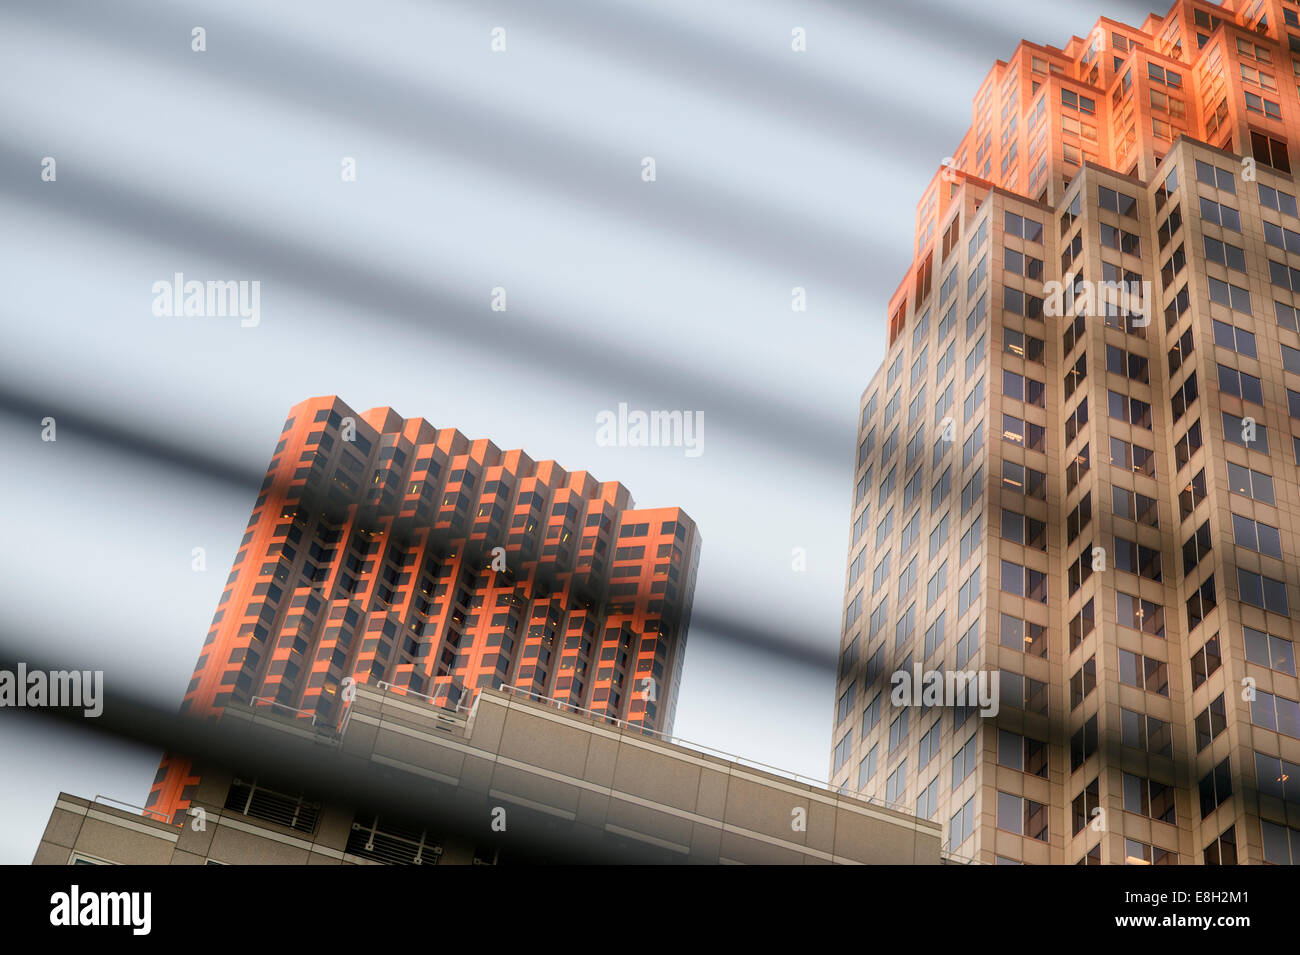 États-unis, Californie, San Francisco, vue à travers les stores aux gratte-ciel soleil Banque D'Images